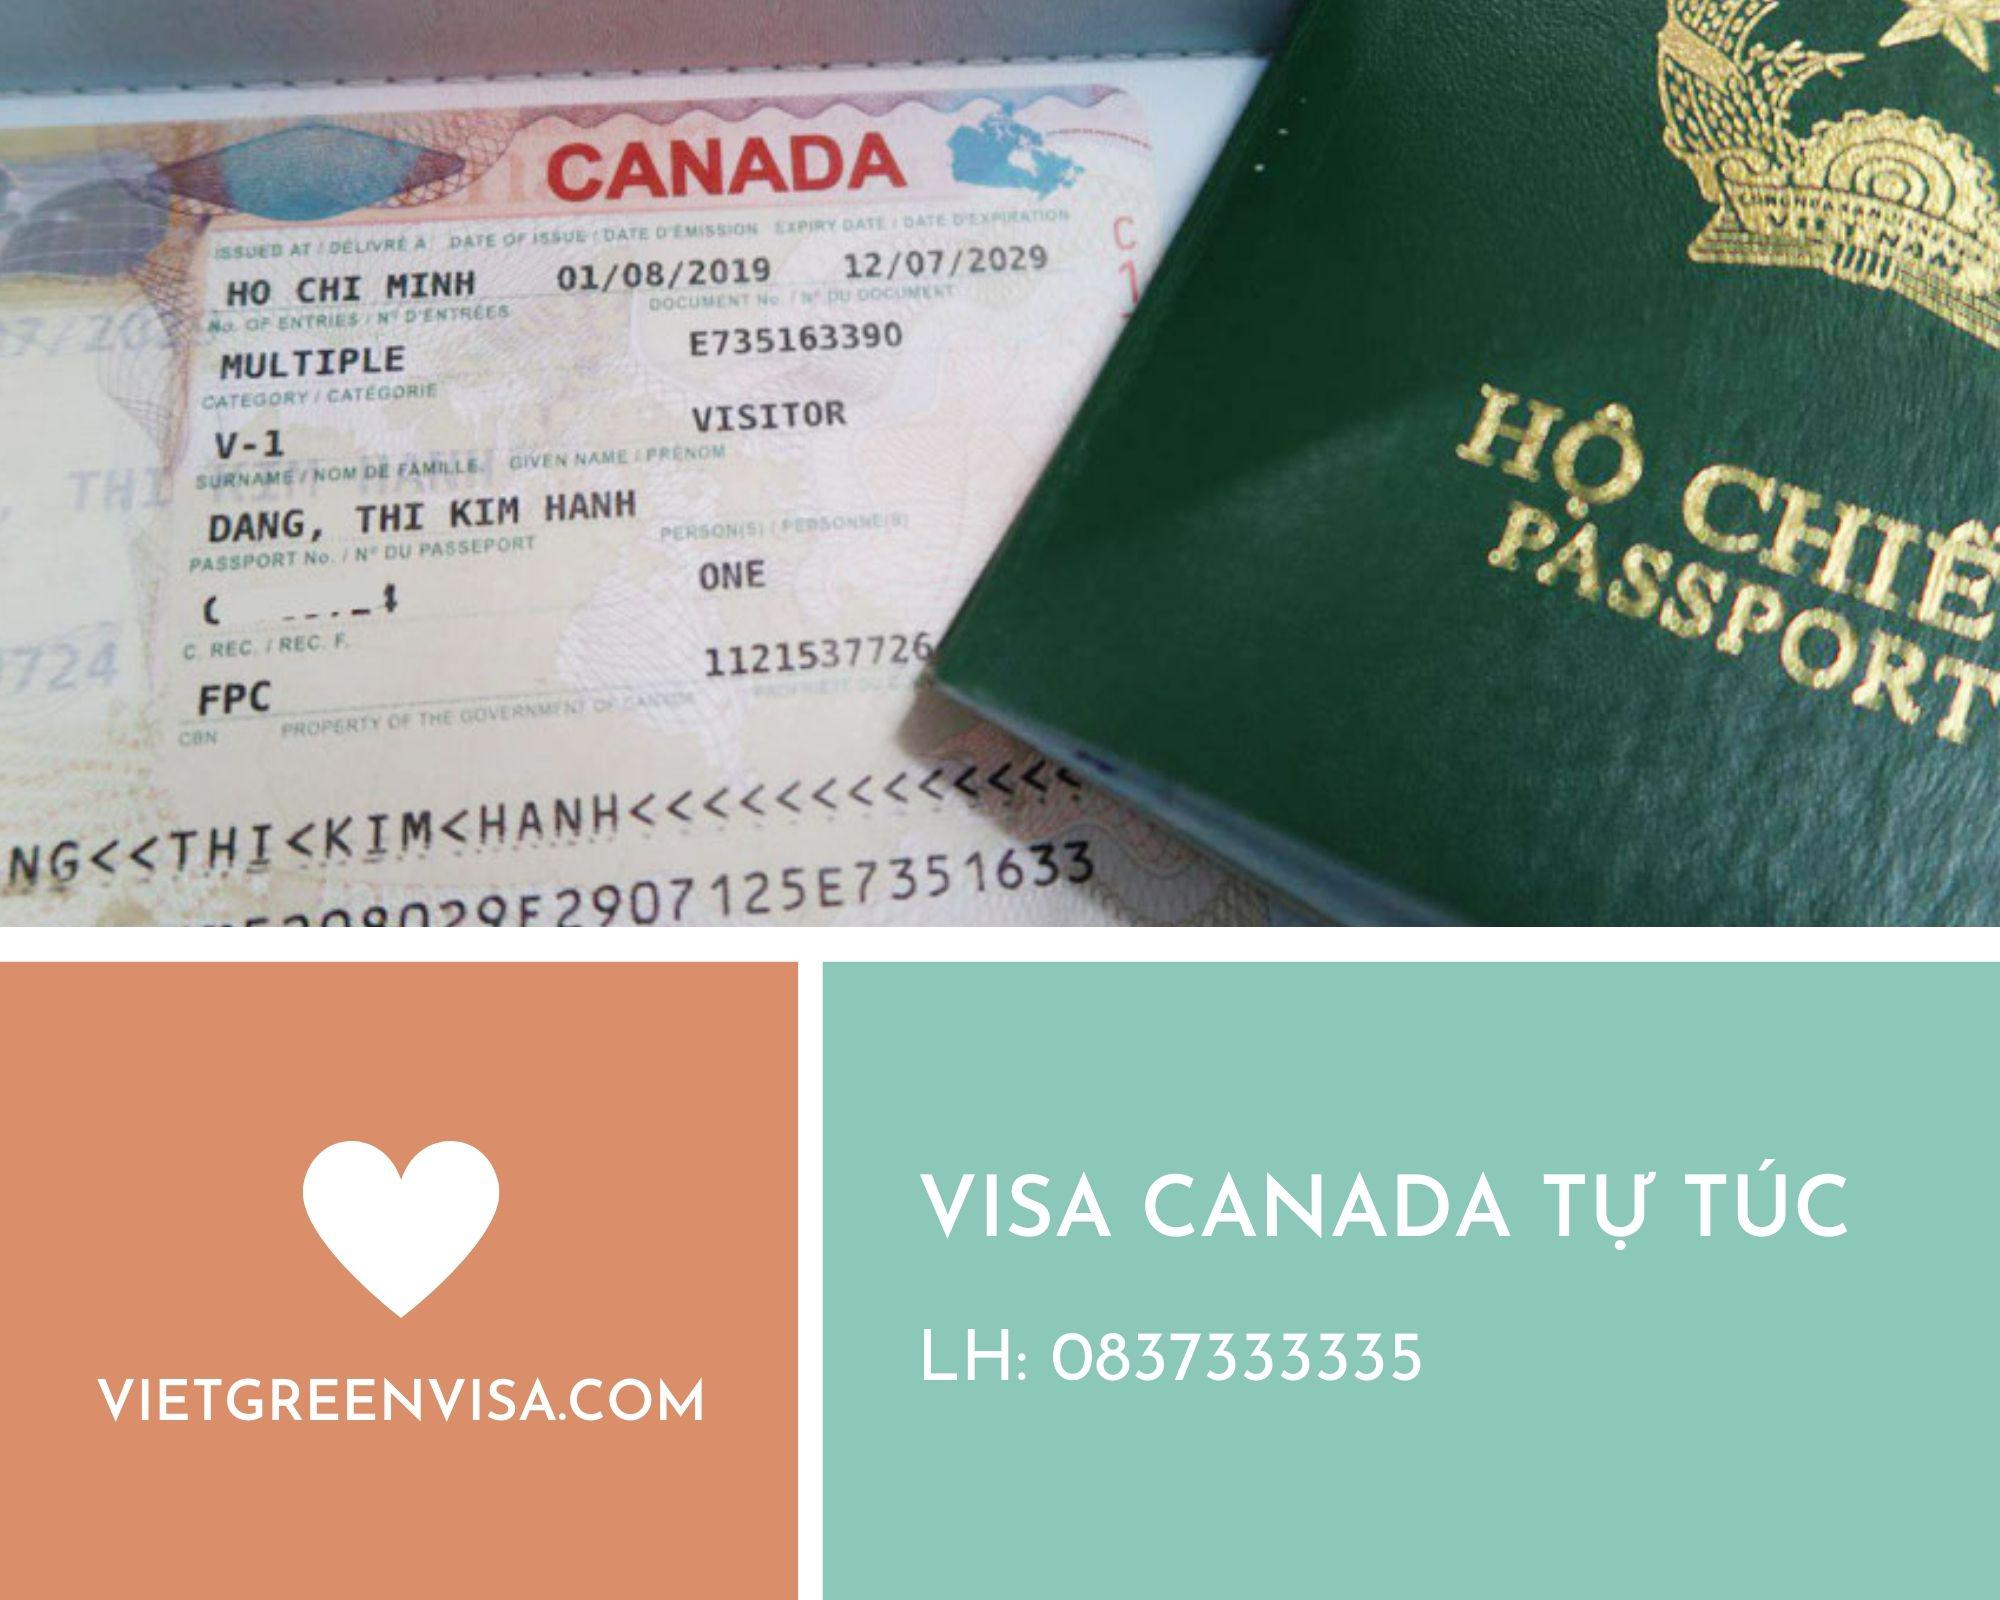 Dịch vụ xin Visa Canada trọn gói tại Hà Nội, Hồ Chí Minh